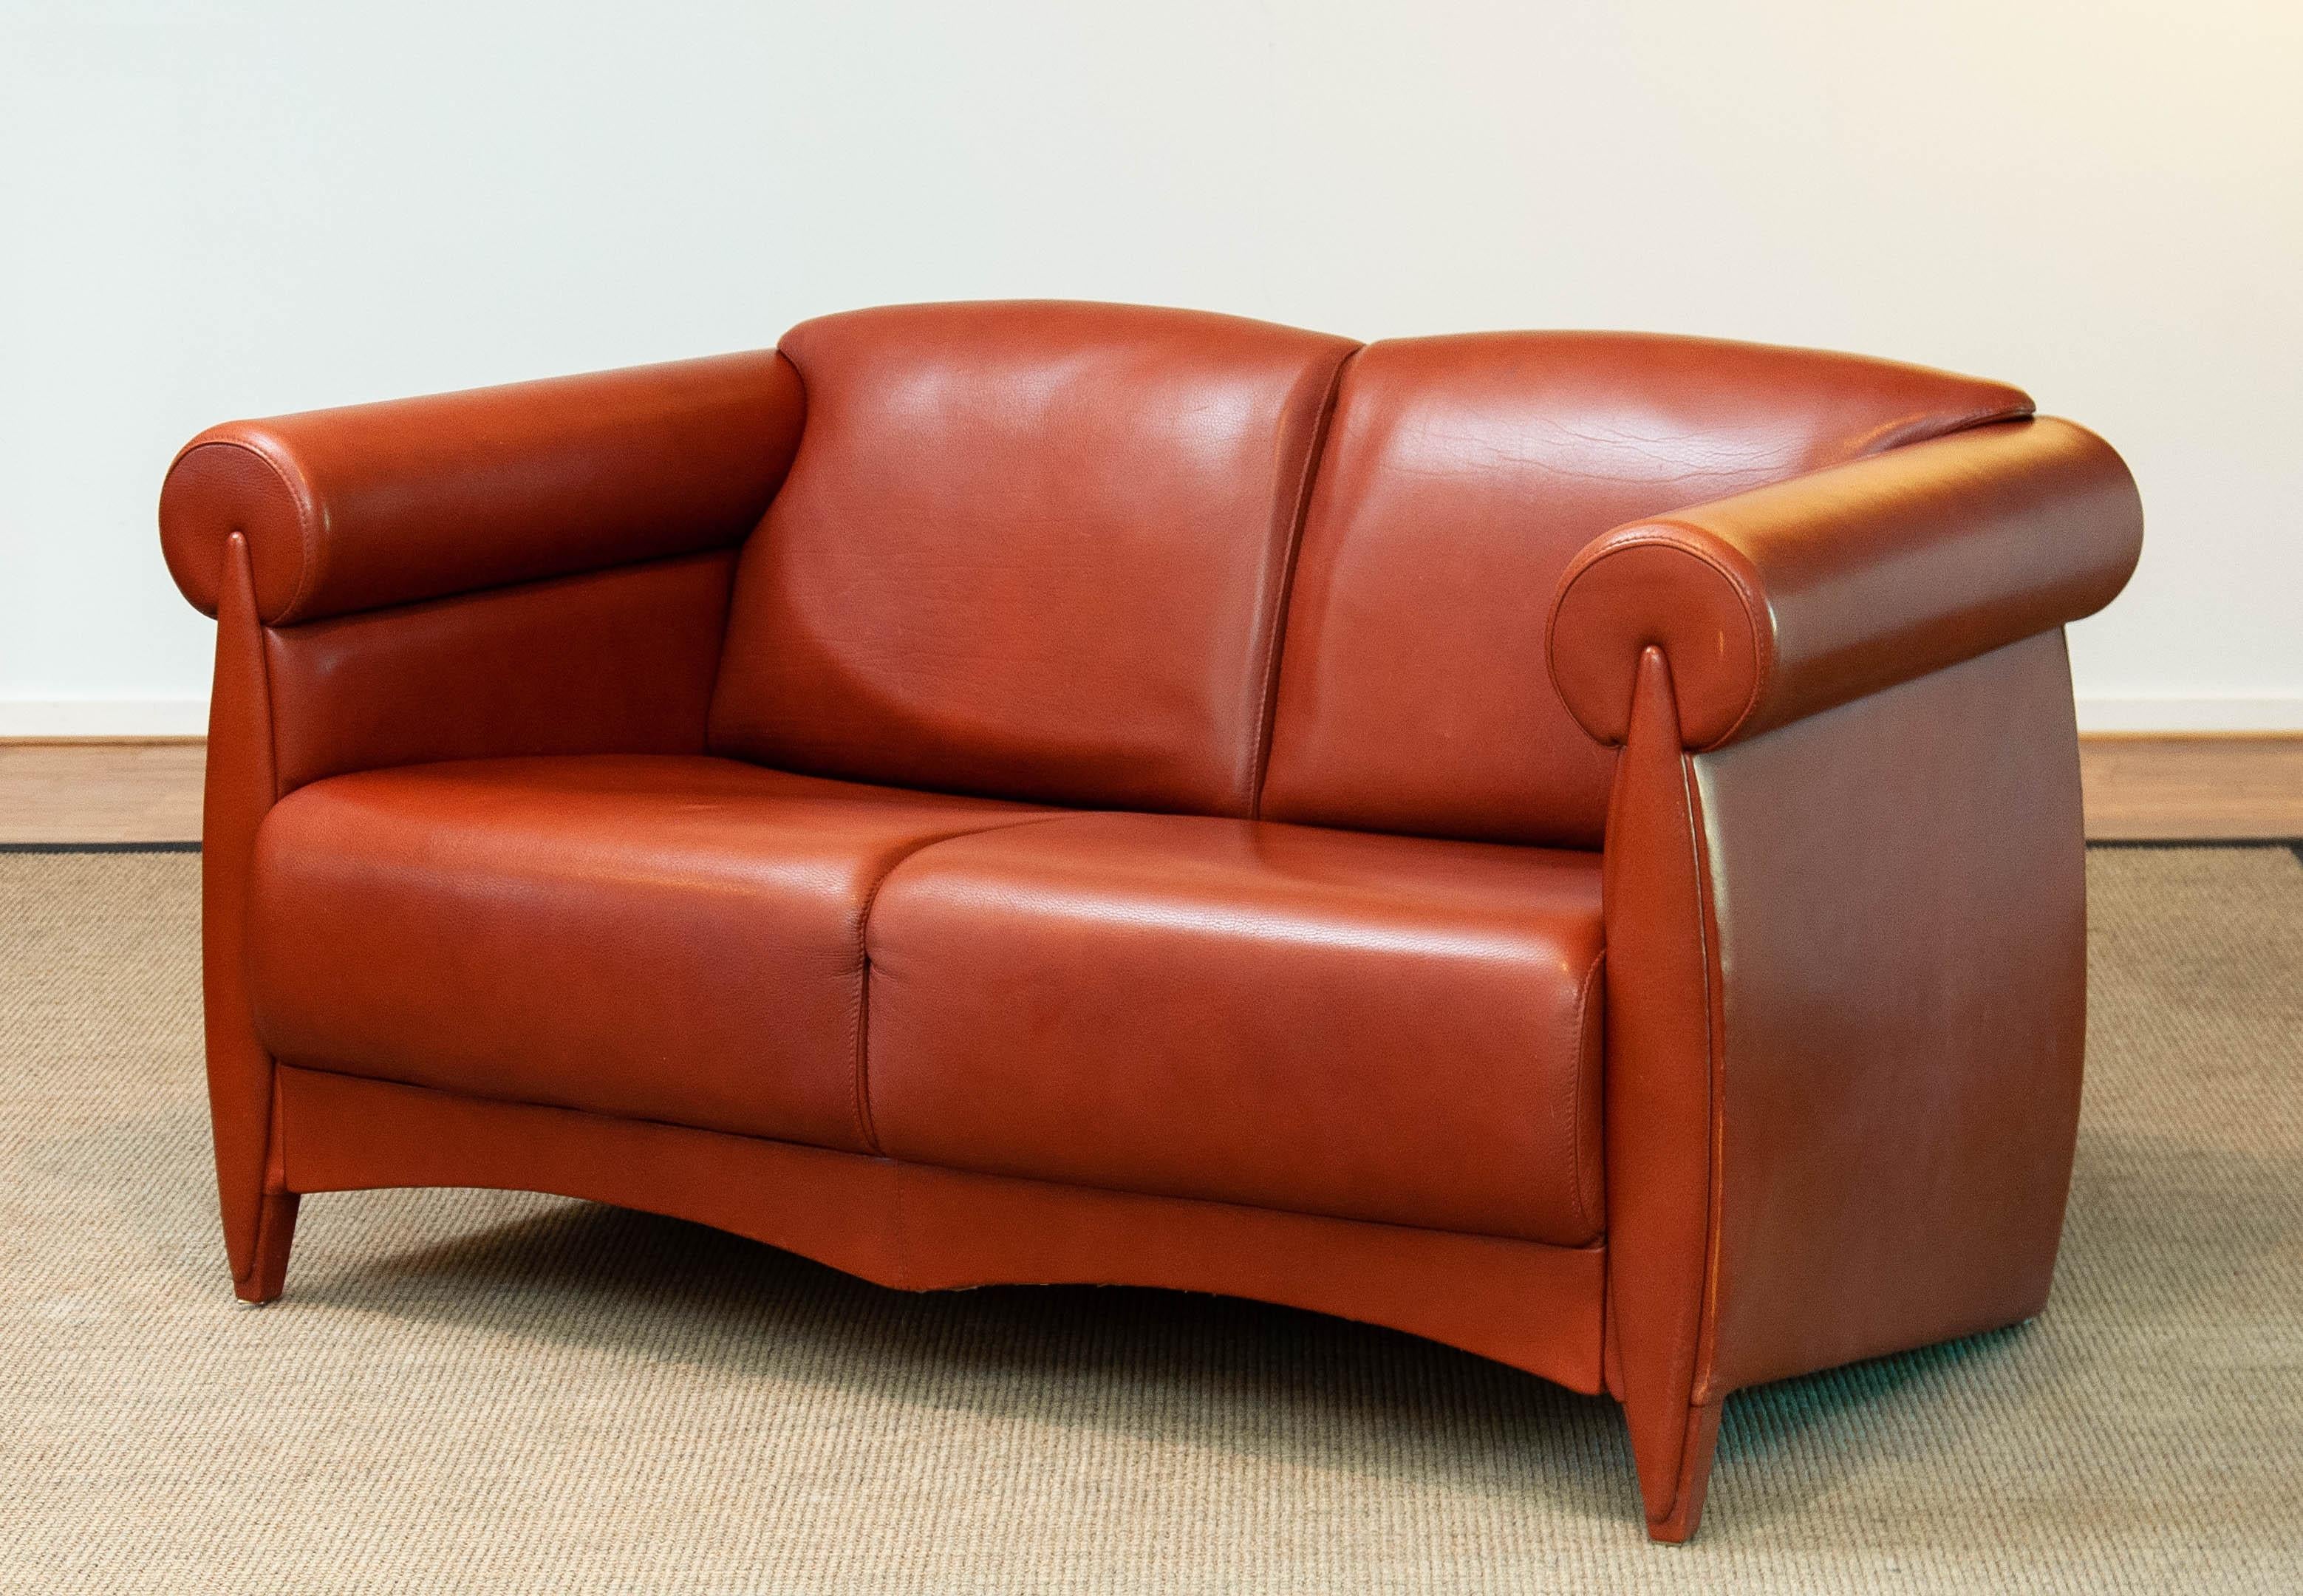 Sehr exklusives und seltenes Zweisitzer-Sofa des dänischen Designers Klaus Wettergren in limitierter Stückzahl und nur auf besonderen Wunsch durch selektive Bestellungen gebaut.
Dieser Zweisitzer ist in einem sehr hohen Standard gebaut und nur die